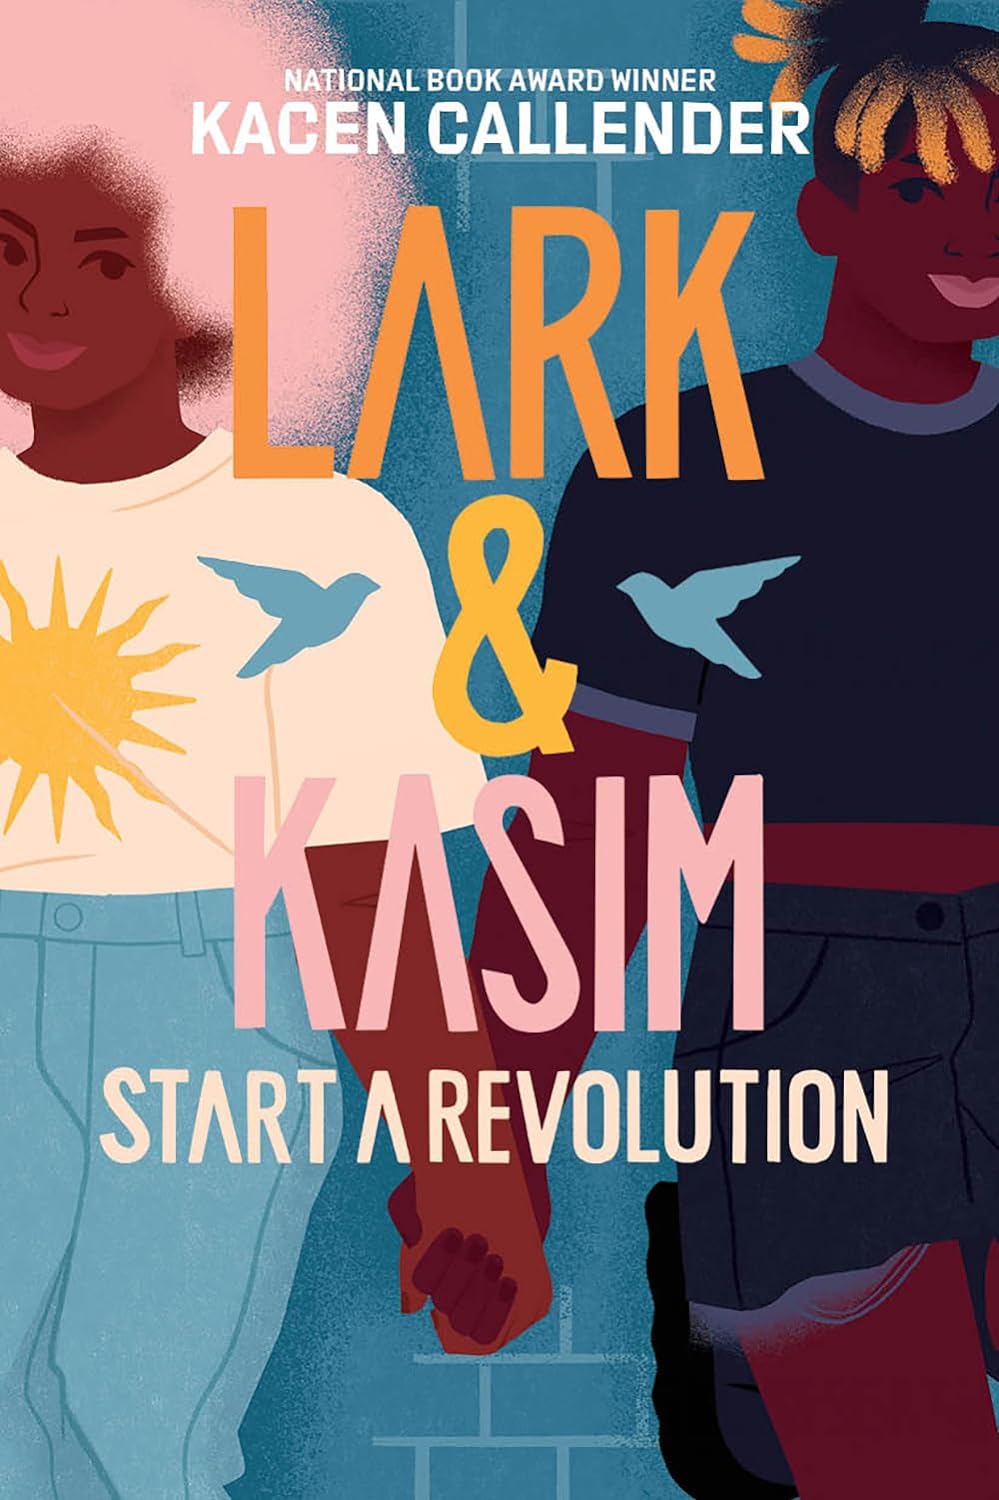 Image for "Lark & Kasim Start a Revolution"